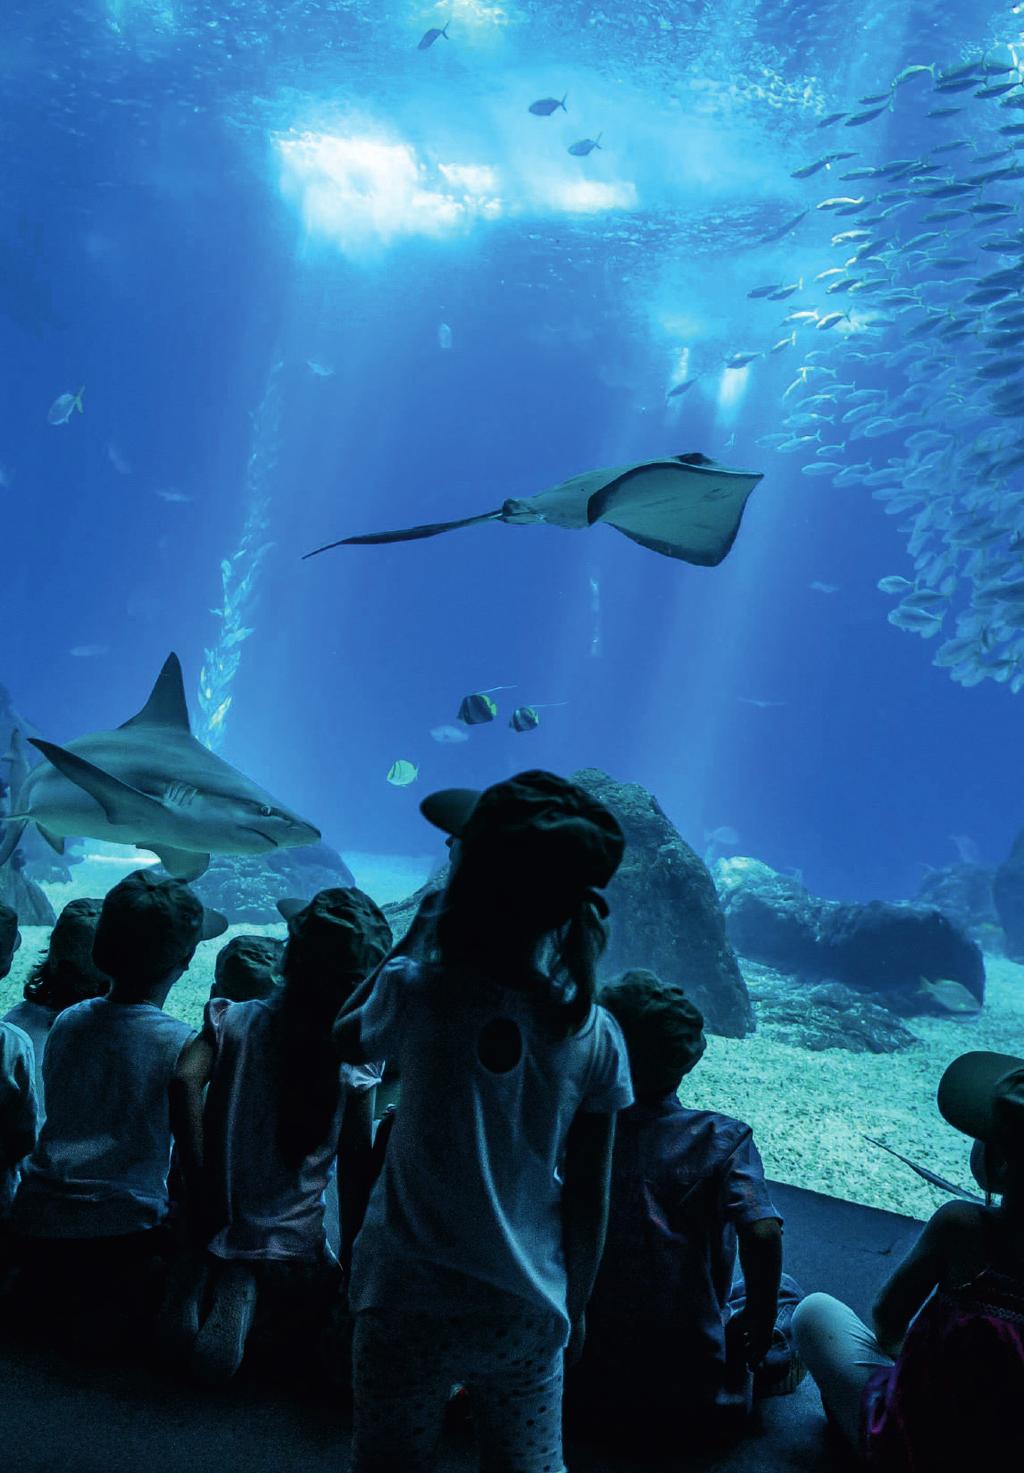 Se o zoo não for su ciente, há ainda o Oceanário de Lisboa. Considerado um dos melhores aquários do mundo, procura promover a proximidade com os oceanos e as suas 8000 criaturas marinhas.